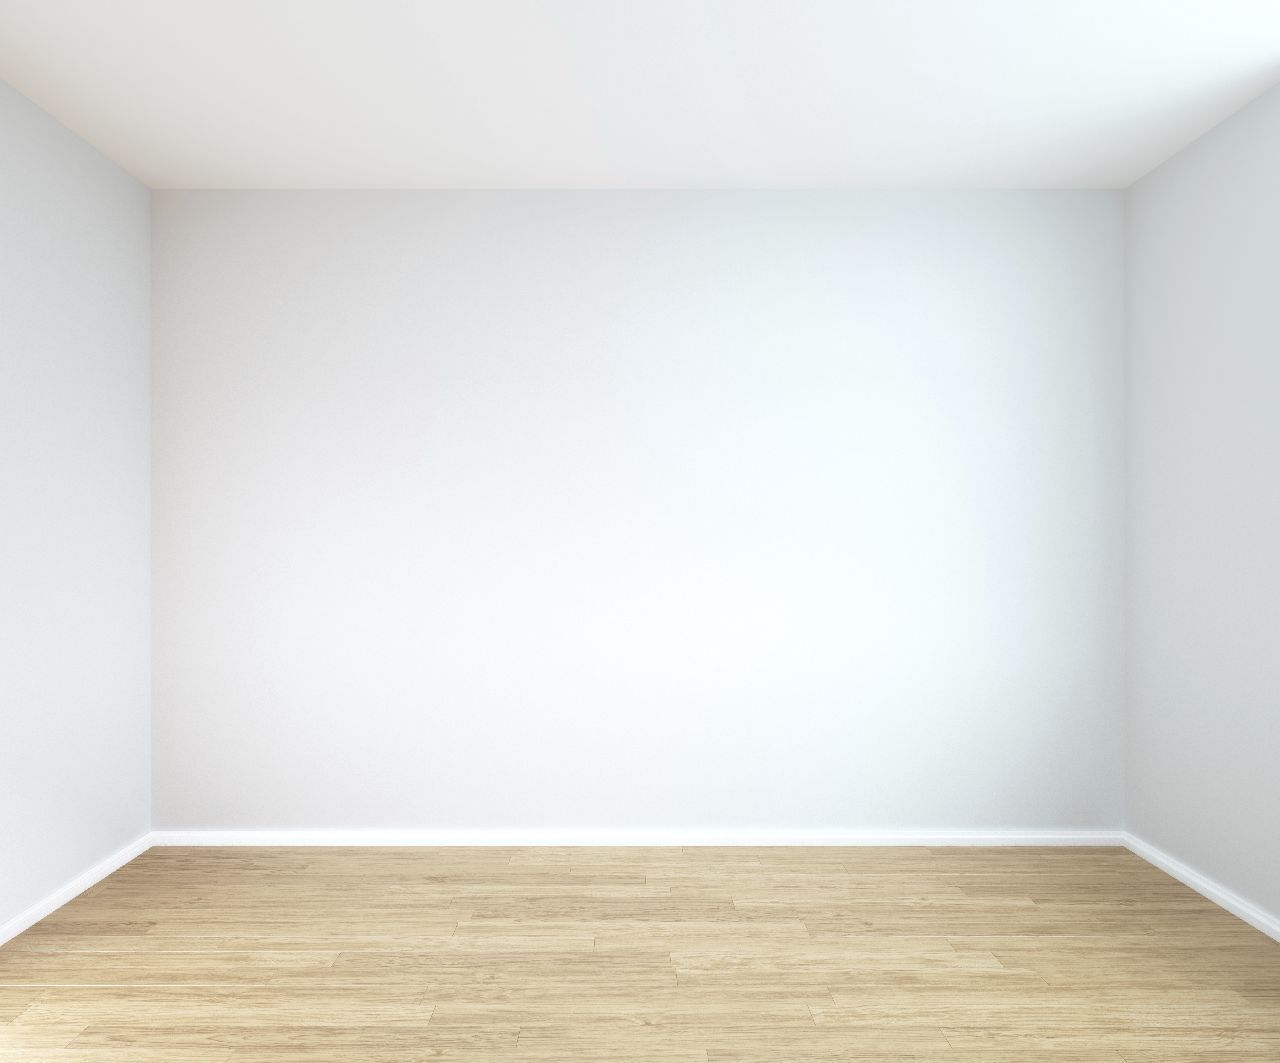 Пустая комната без мебели. Пустая комната. Белая комната без мебели. Интерьер пустой комнаты. Пустая стена.